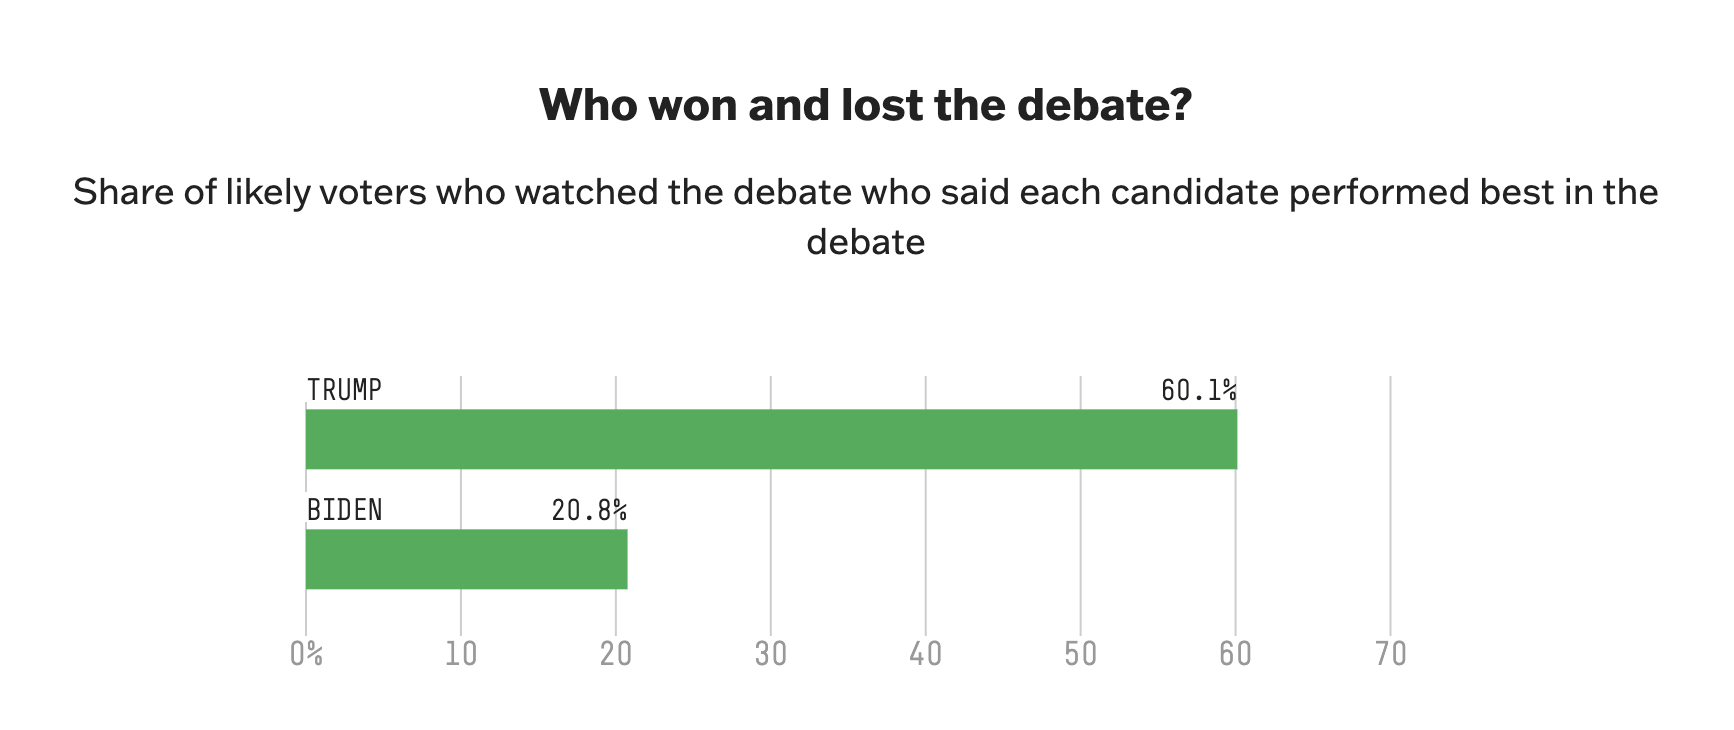 Байден програв дебати, але не втратив підтримку виборців: результати опитування
